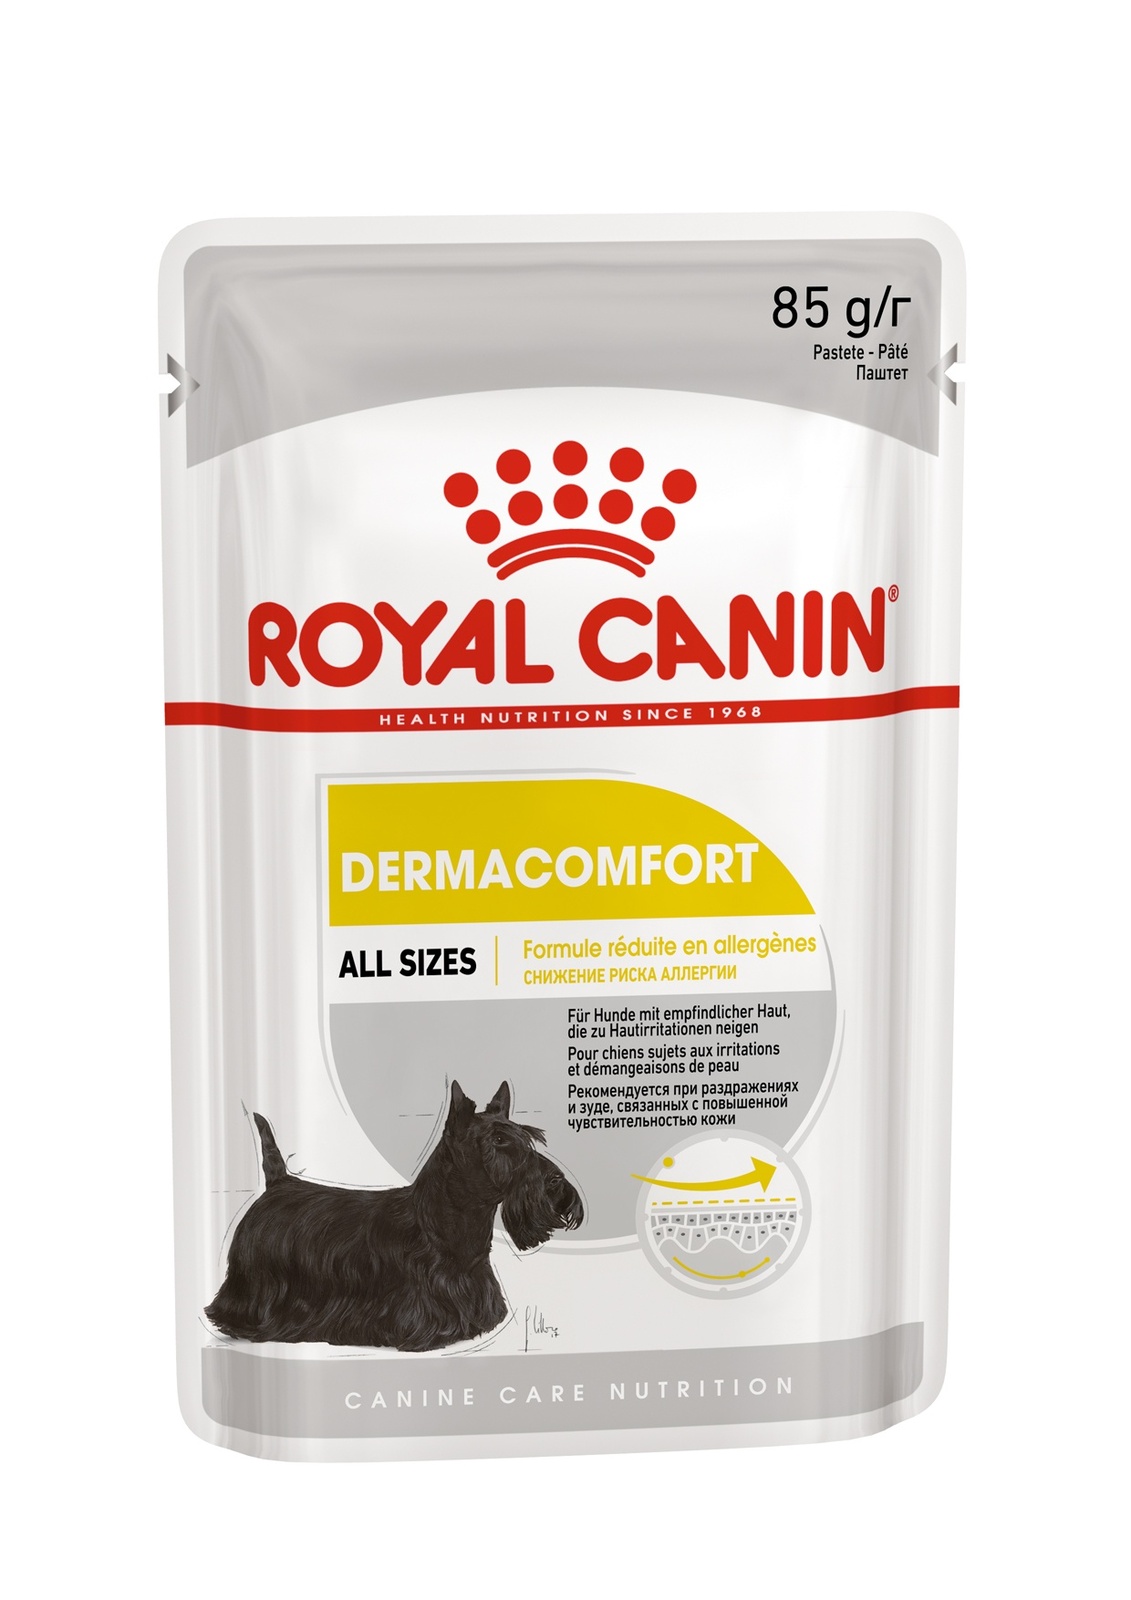 Royal Canin паучи паштет для собак с чувствительной кожей, склонной к раздражению и зуду (85 г)